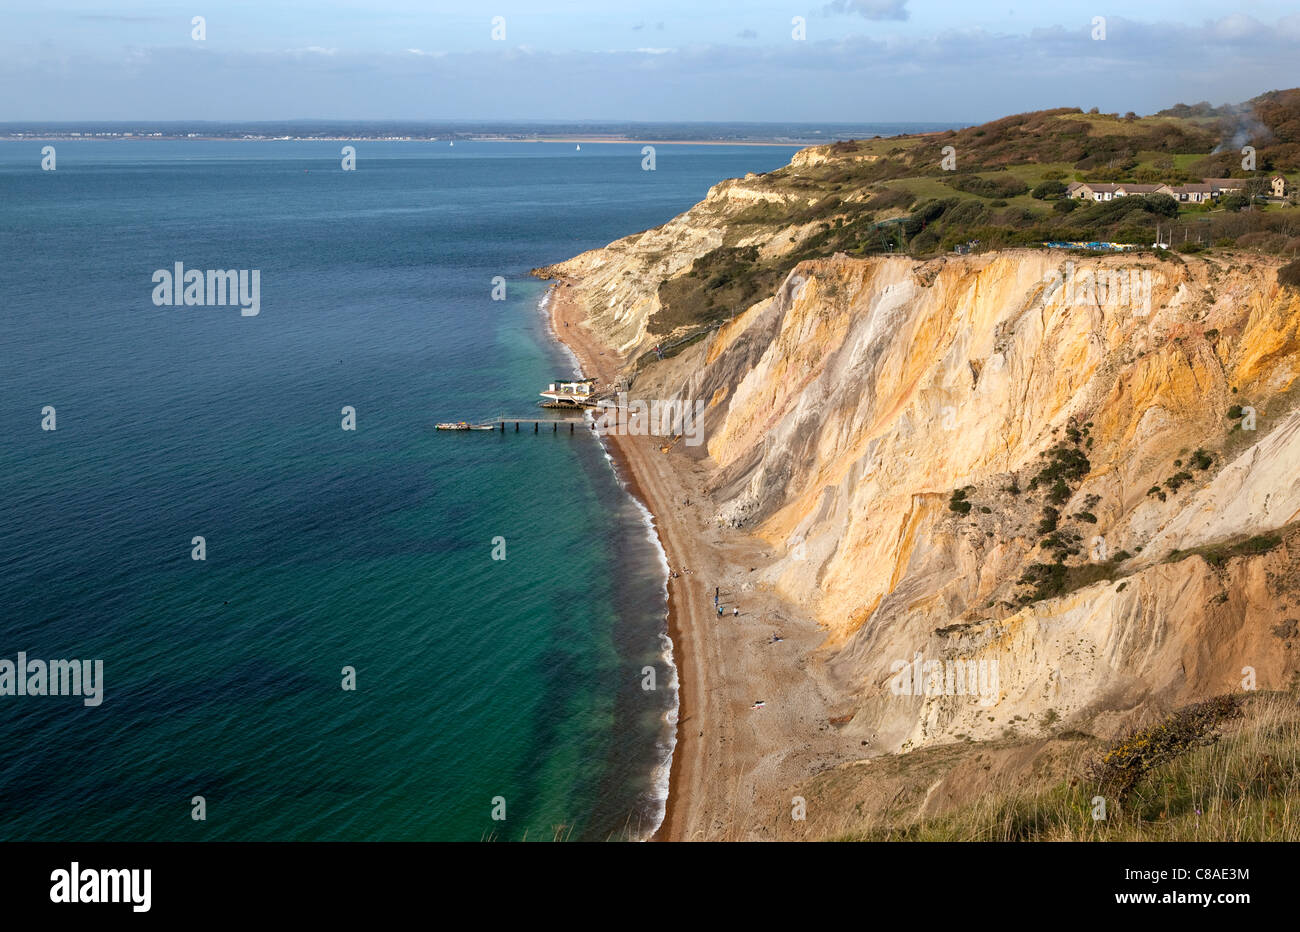 Alum Bay, en la Isla de Wight. De interés geológico y una atracción turística, la bahía se destaca por sus acantilados de arena multicolor. Foto de stock